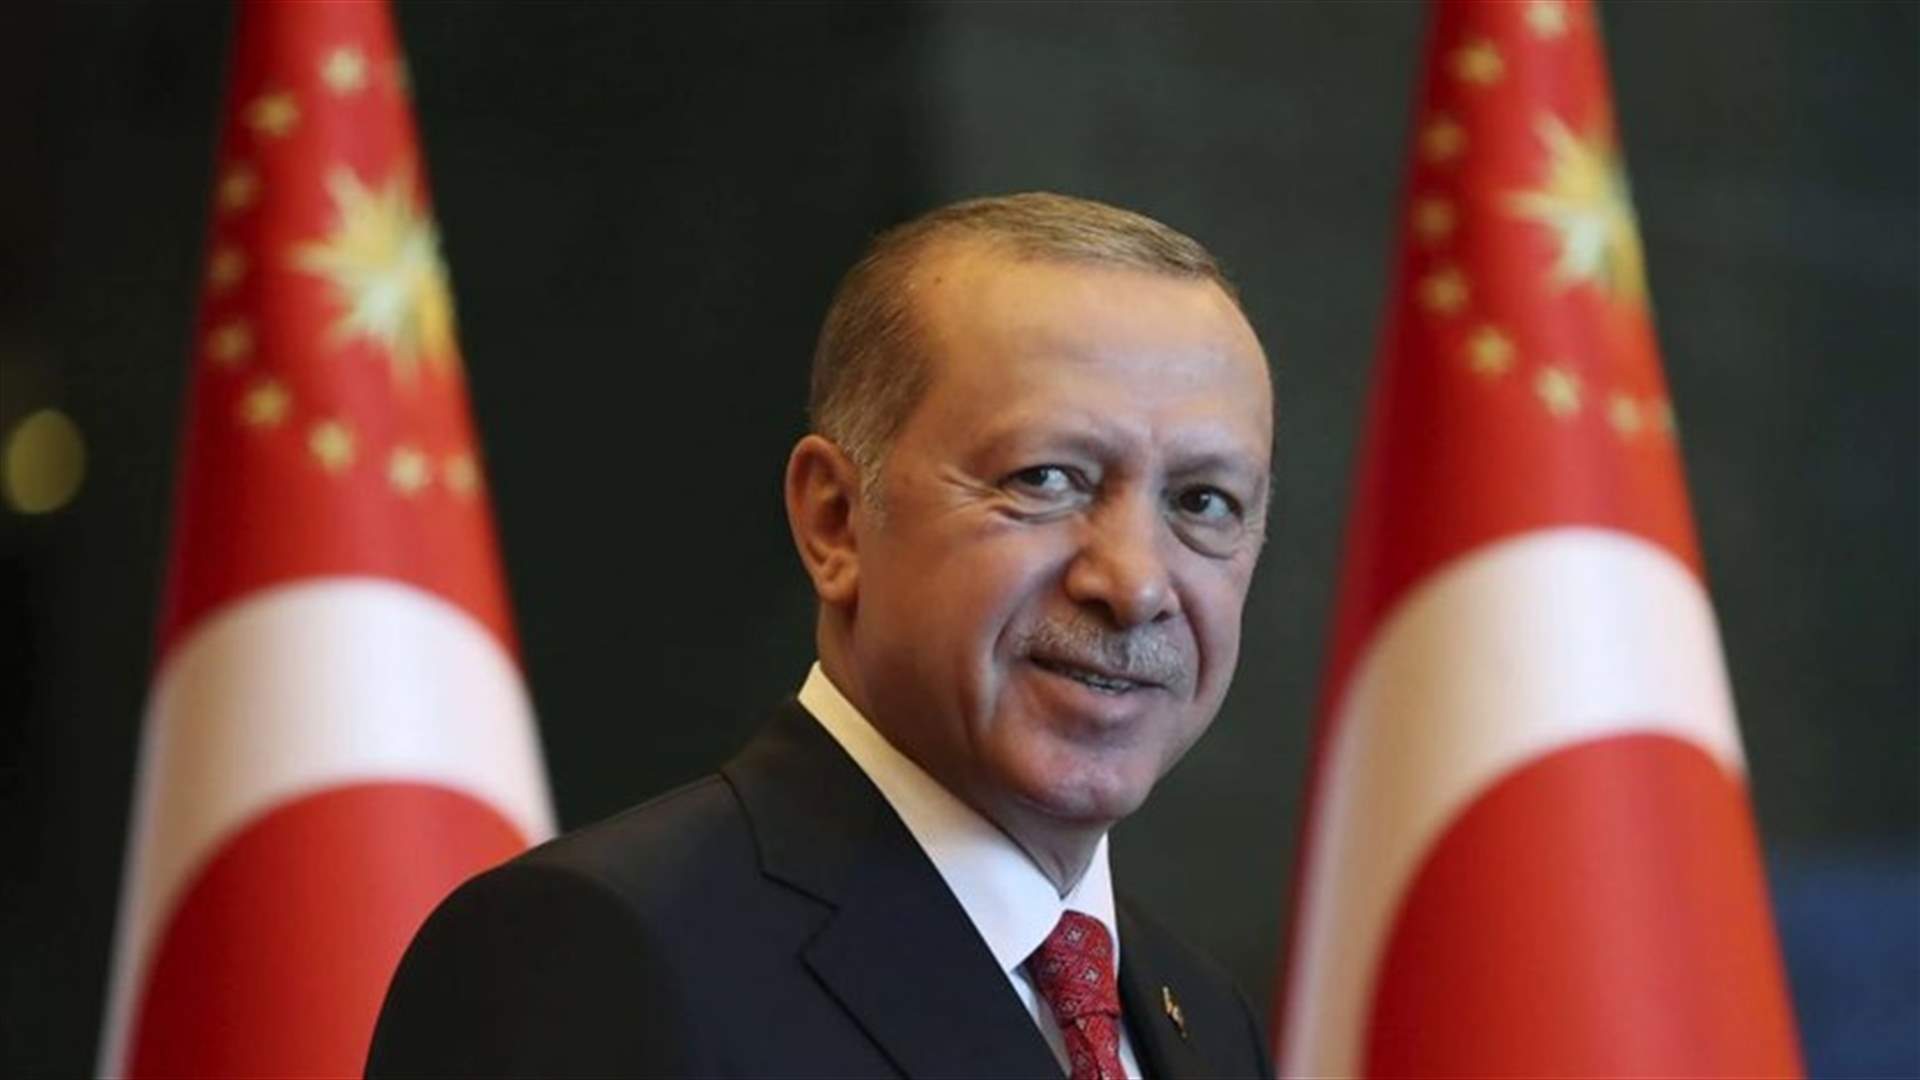 إردوغان يبدي استعداده للقاء رئيس وزراء اليونان لبحث التوتر في شرق المتوسط